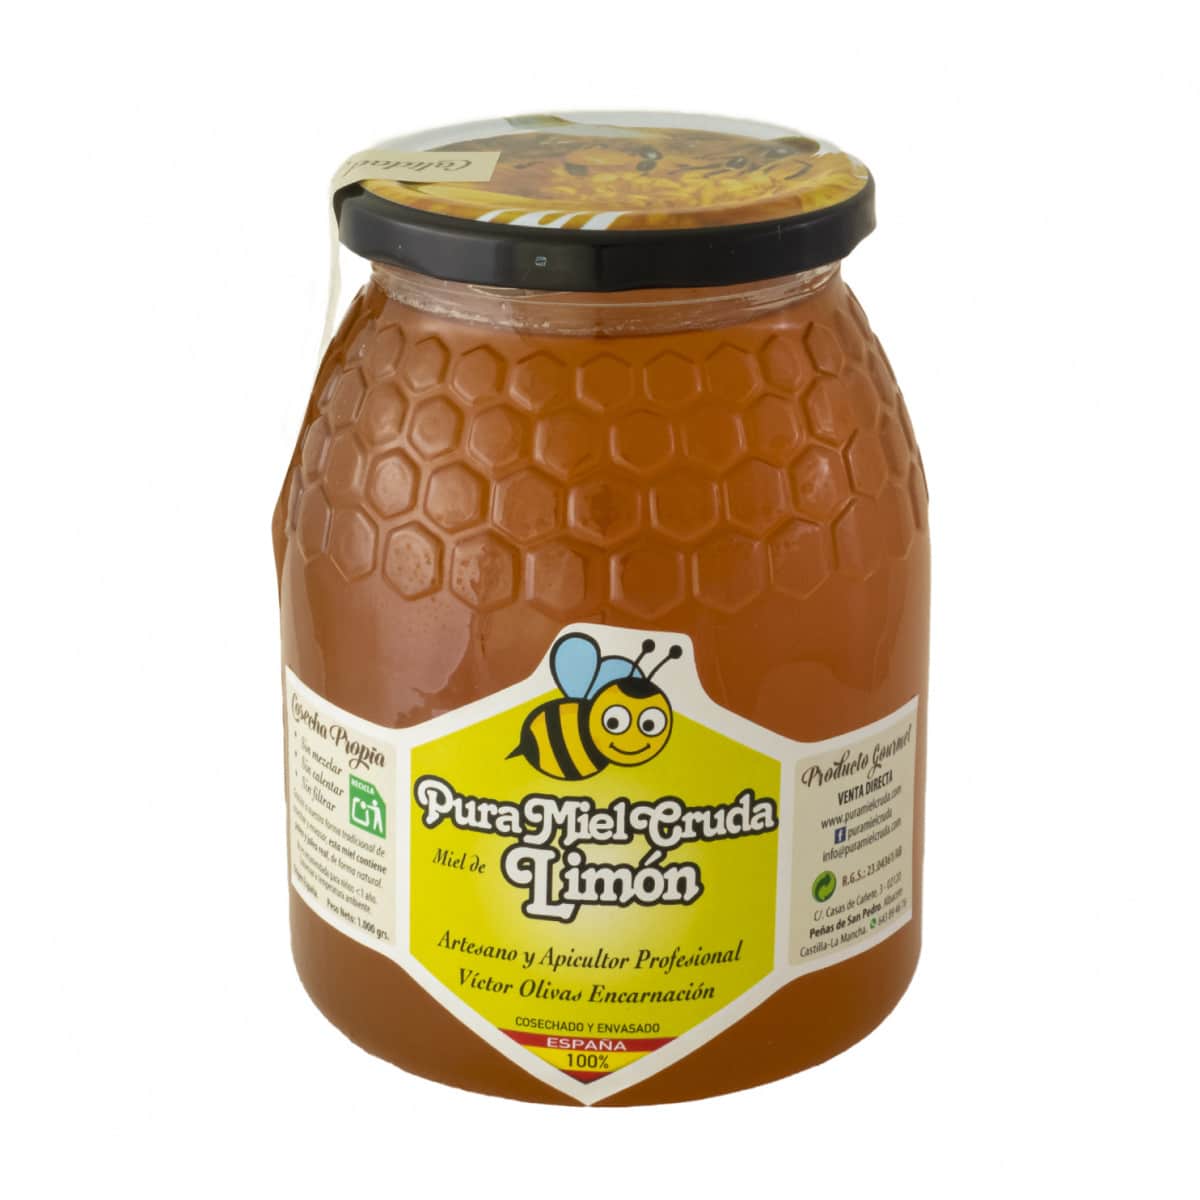 Tarro pura miel cruda limon1000g